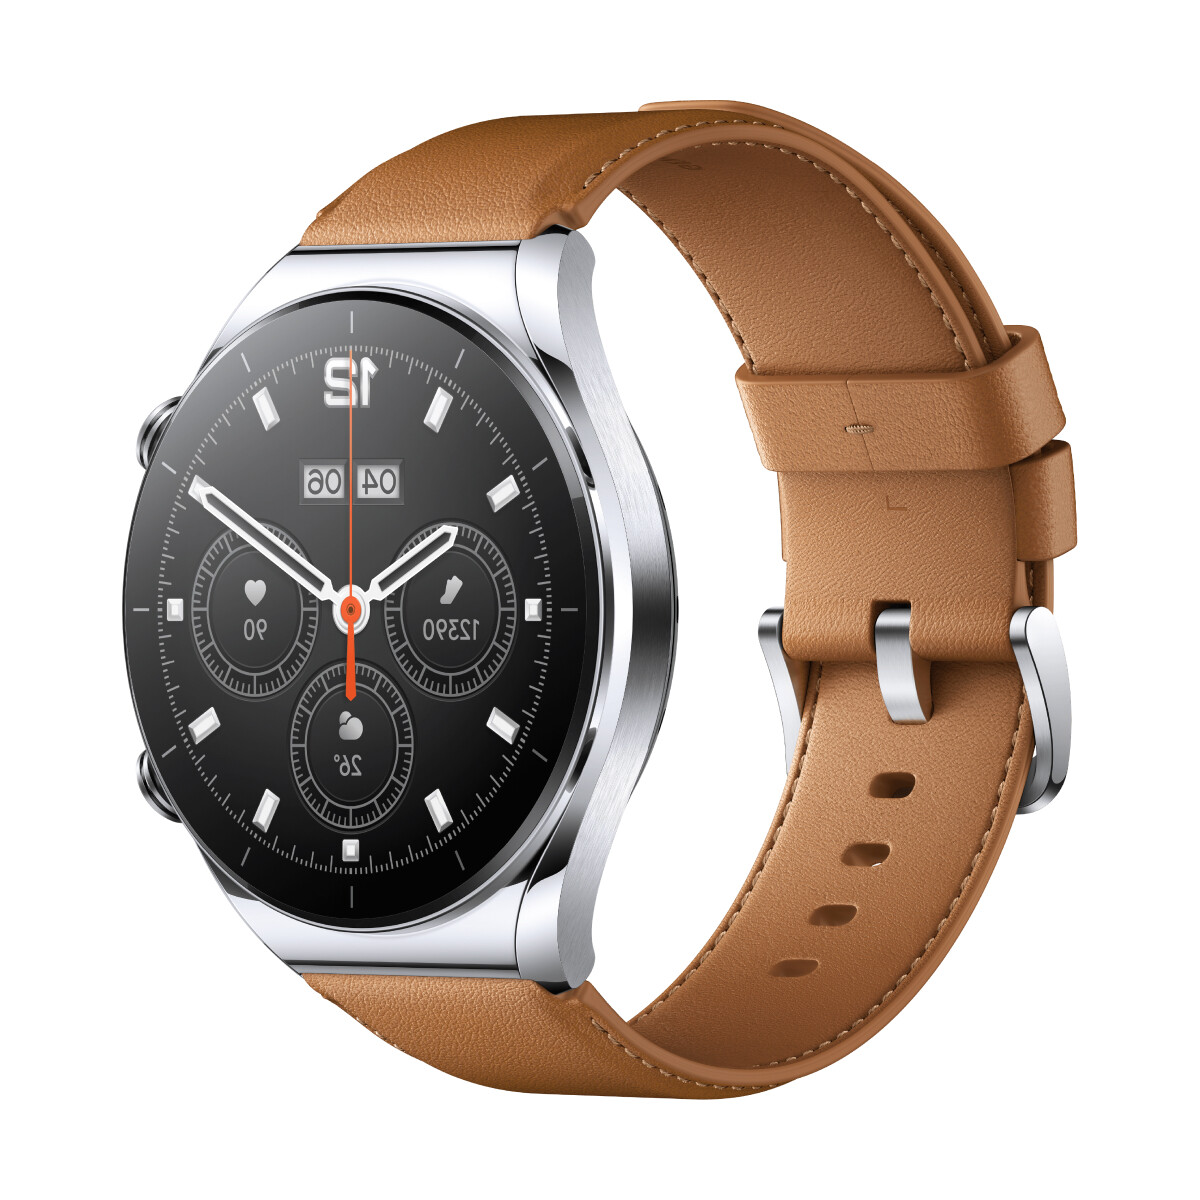 Smartwatch xiaomi mi watch s1 gps 1.43' - Silver 